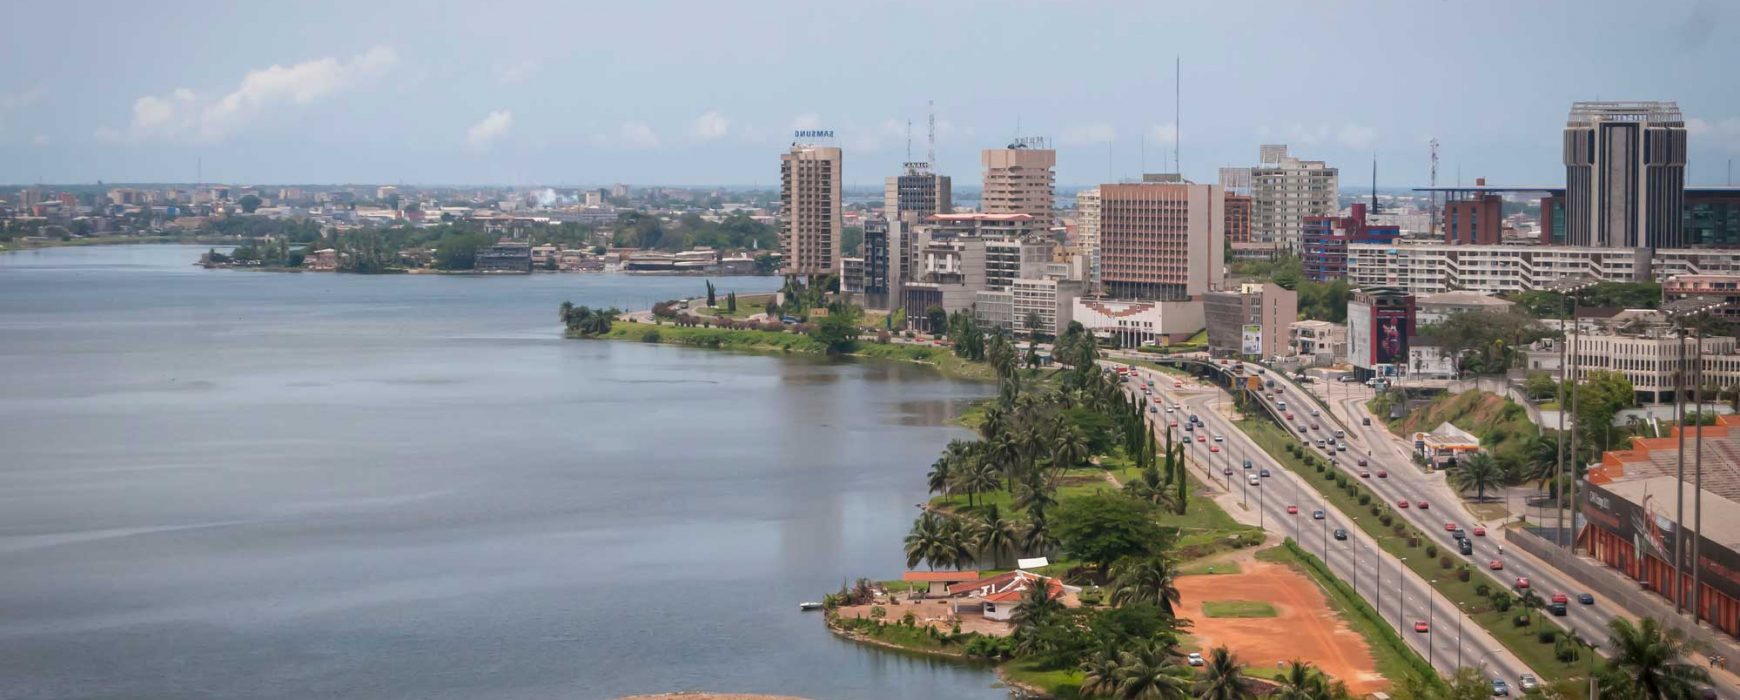 COTE D’IVOIRE : Simplification et transformation digitale du foncier urbain